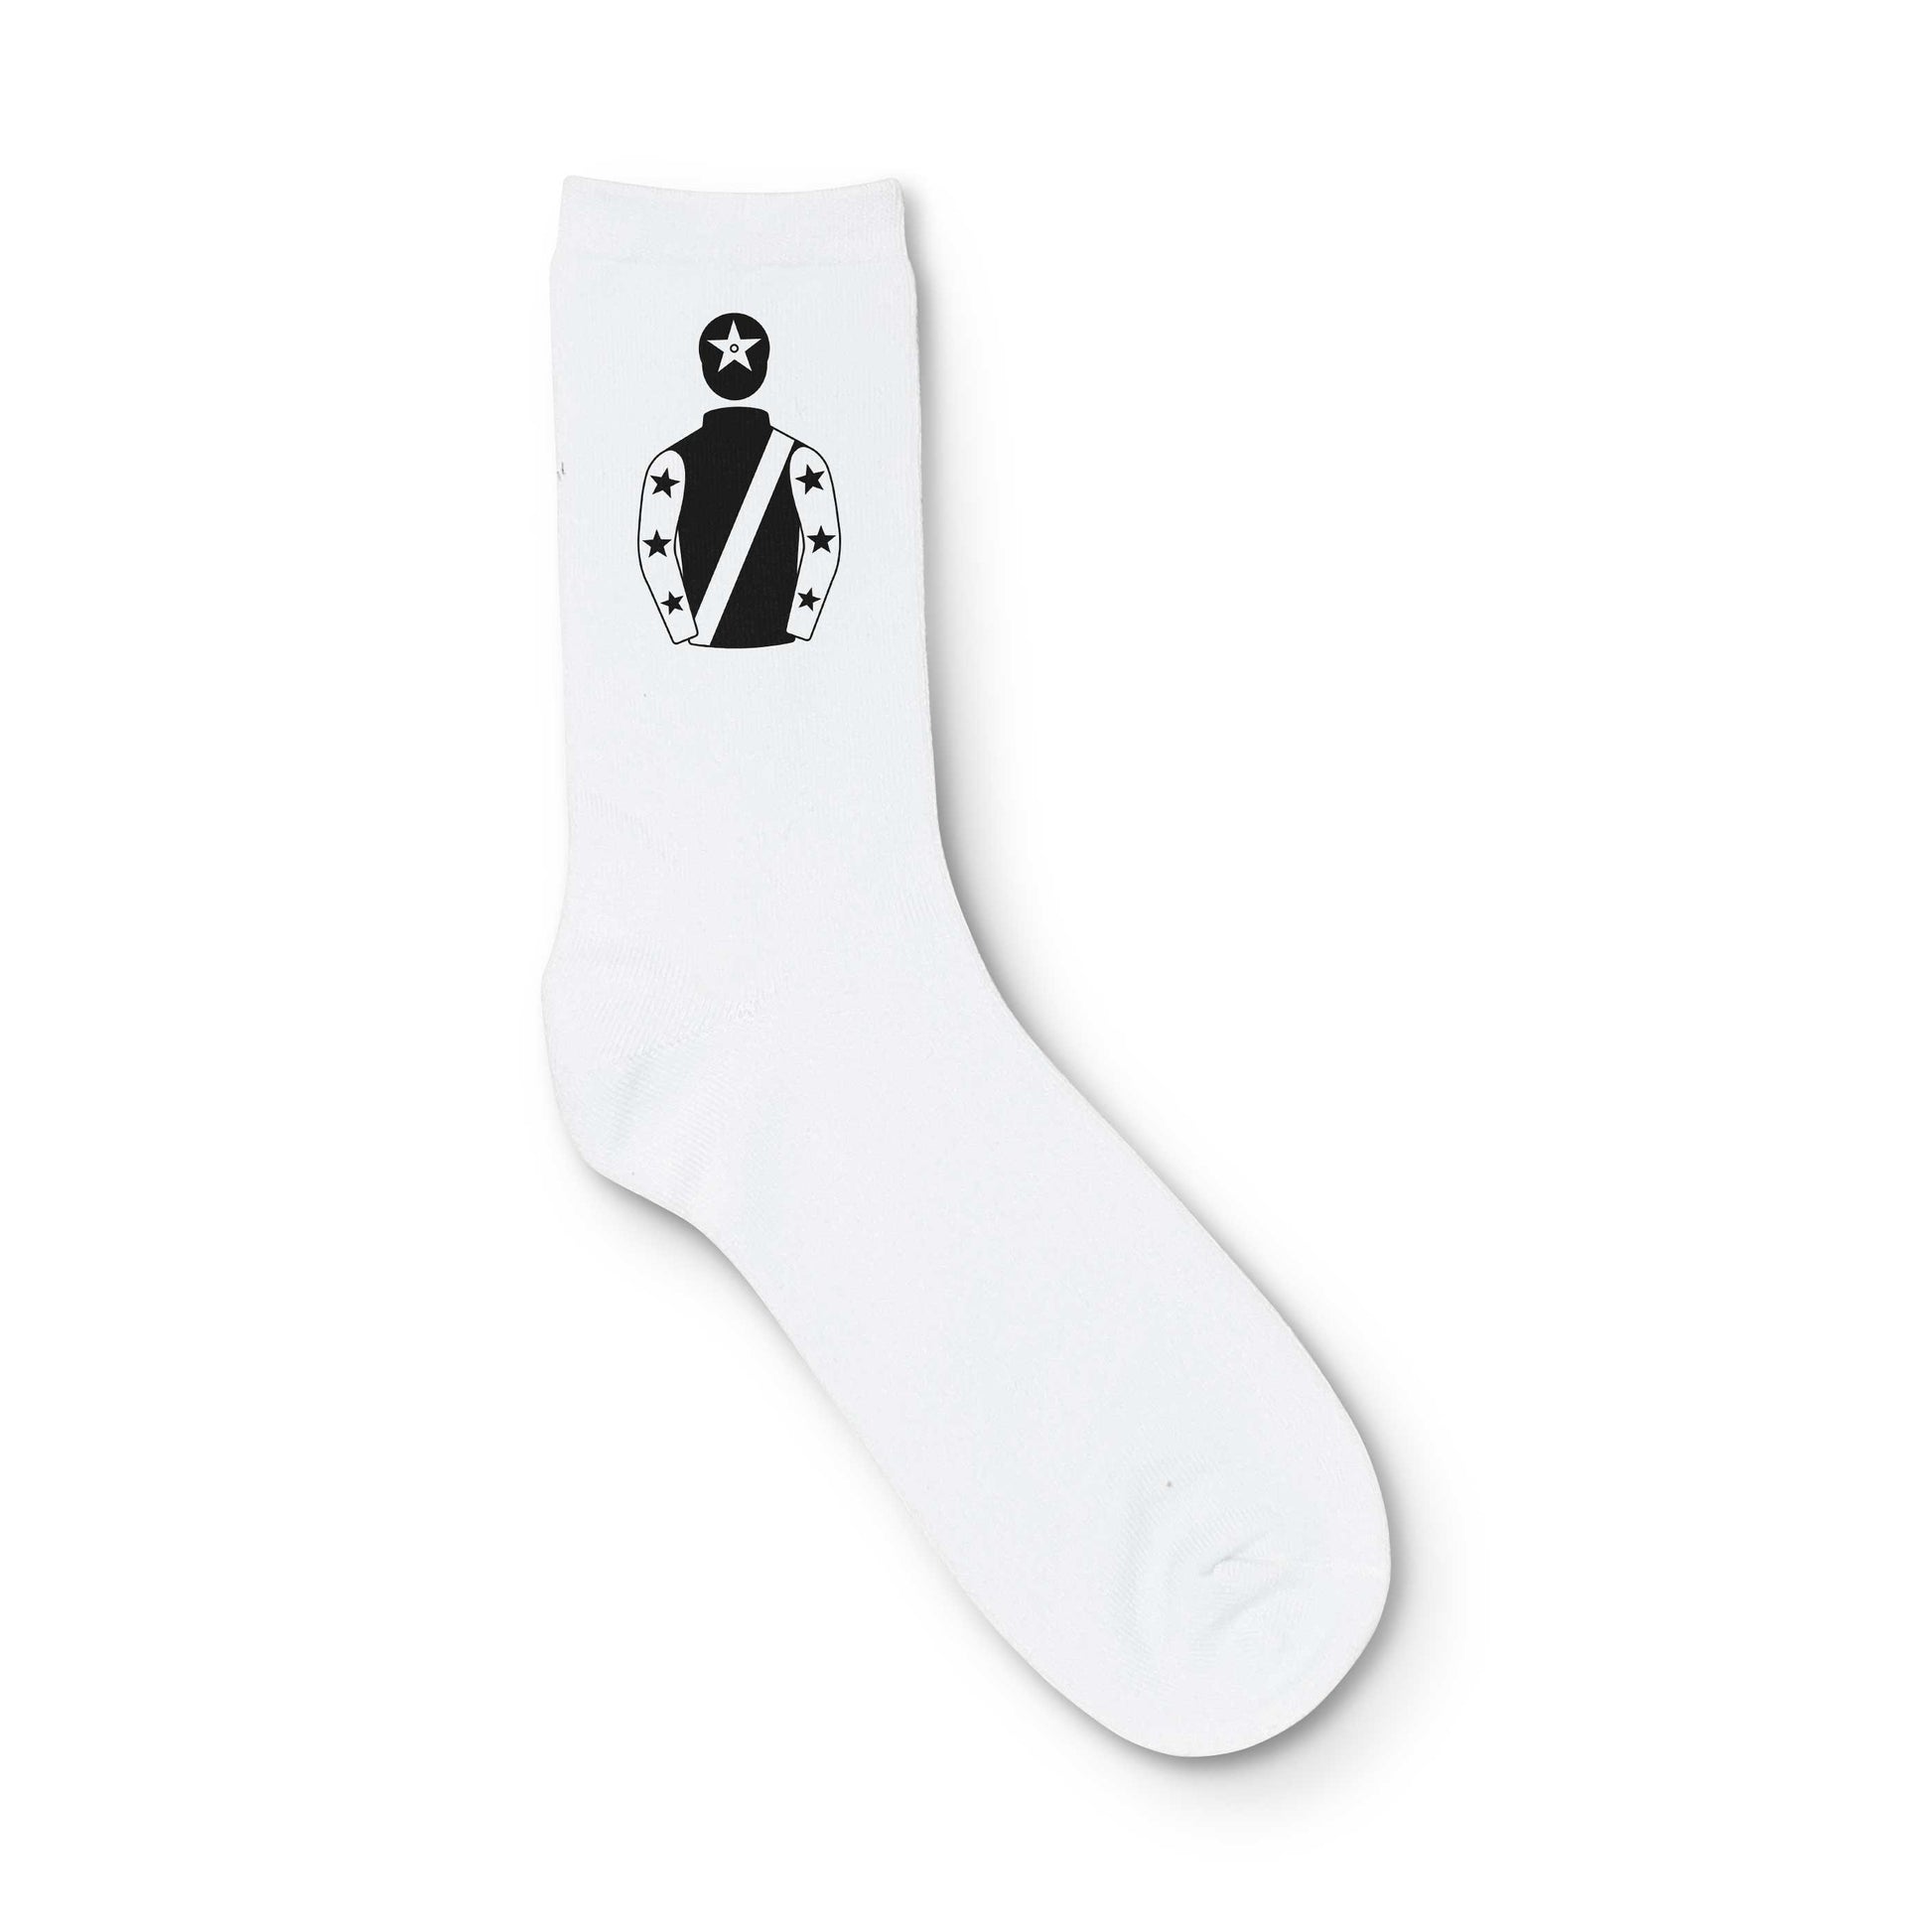 KTDA Racing Printed Sock - Printed Sock - Hacked Up